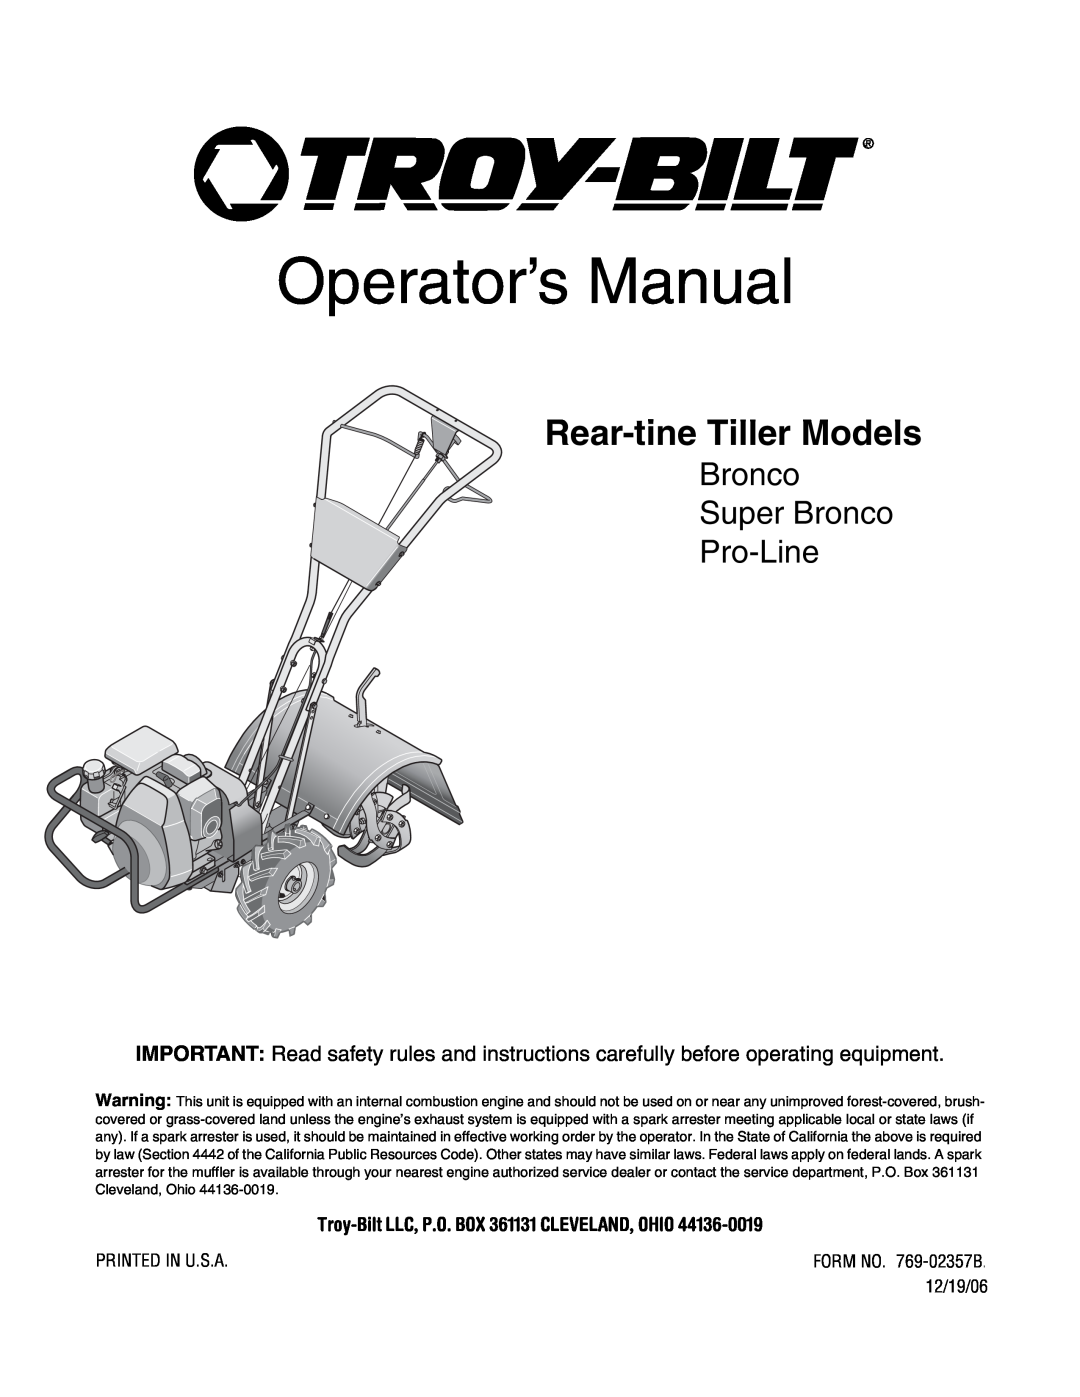 Troy-Bilt manual Operator’s Manual, Rear-tine Tiller Models, Bronco Super Bronco Pro-Line 